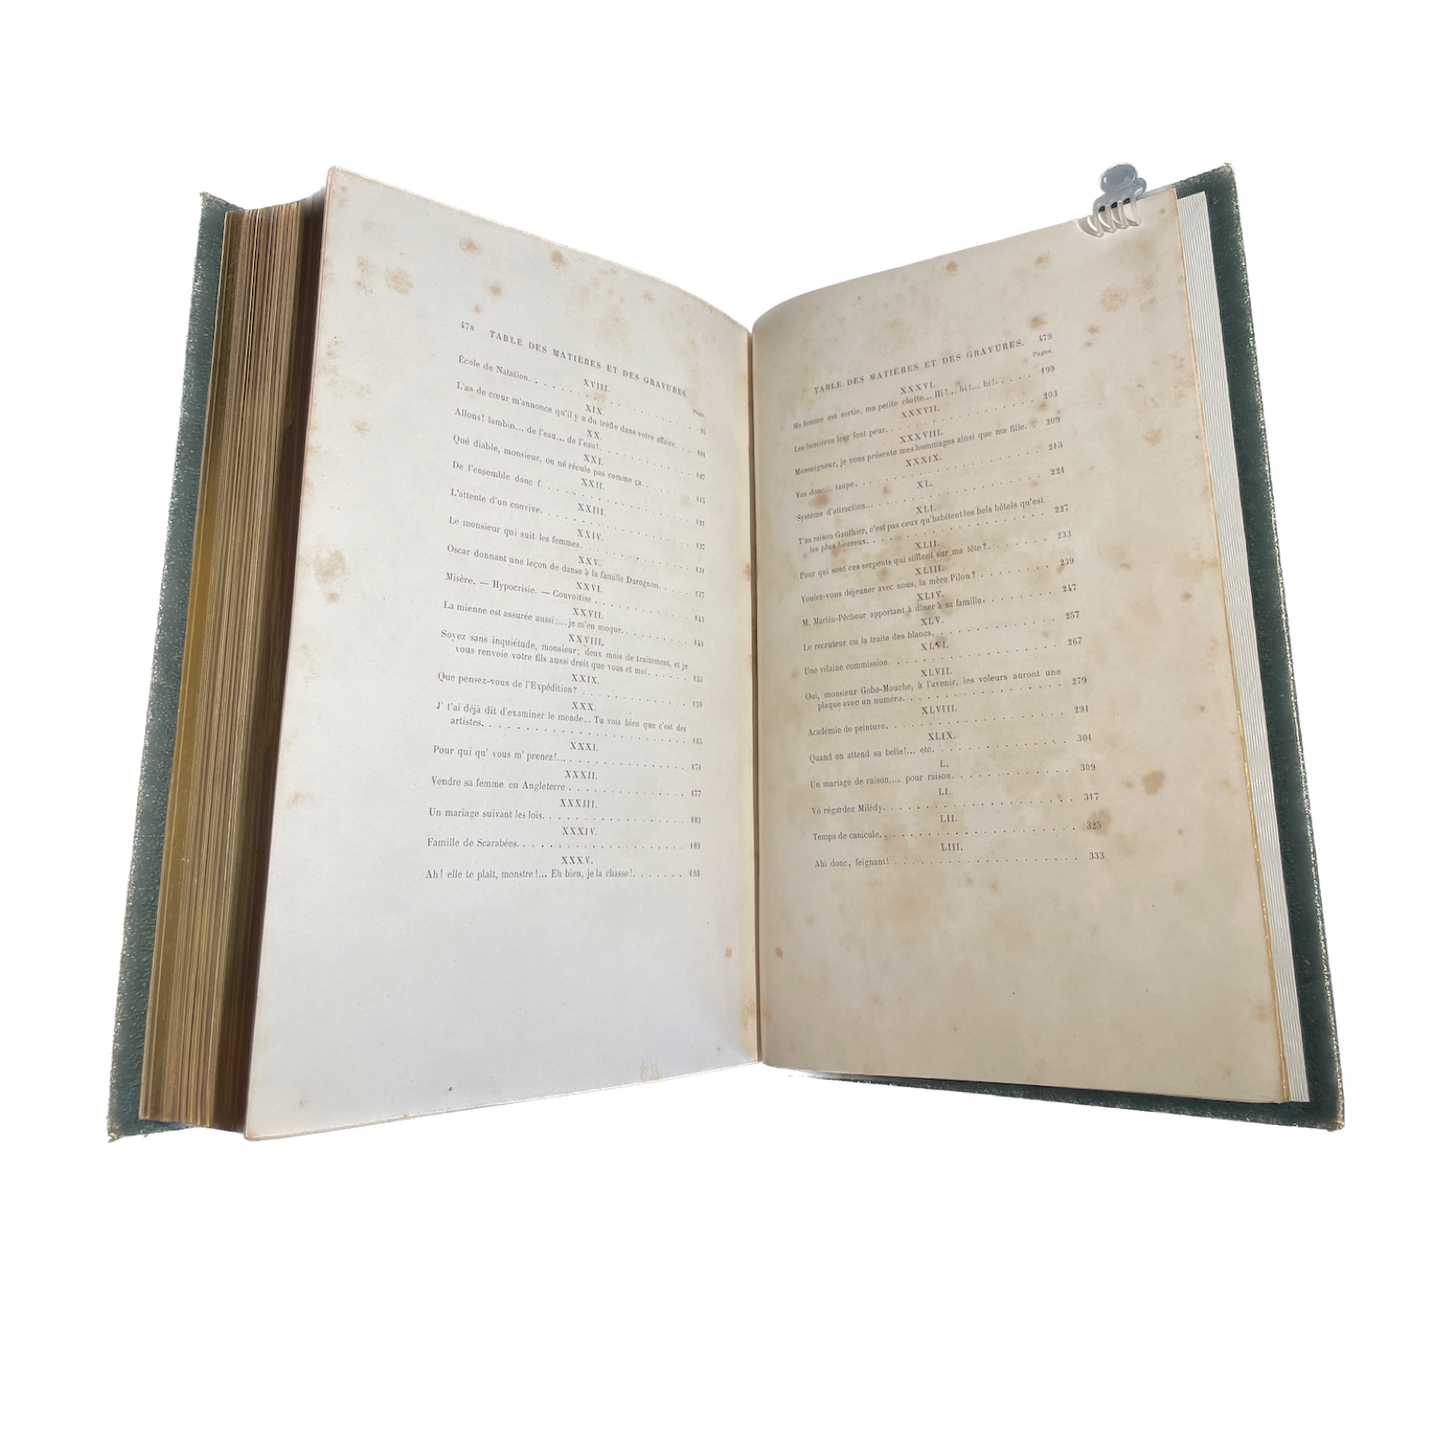 1869 - GRANDVILLE (JEAN JACQUES).Les Métamorphoses du jour. Nouvelle édition revue par Jules Janin